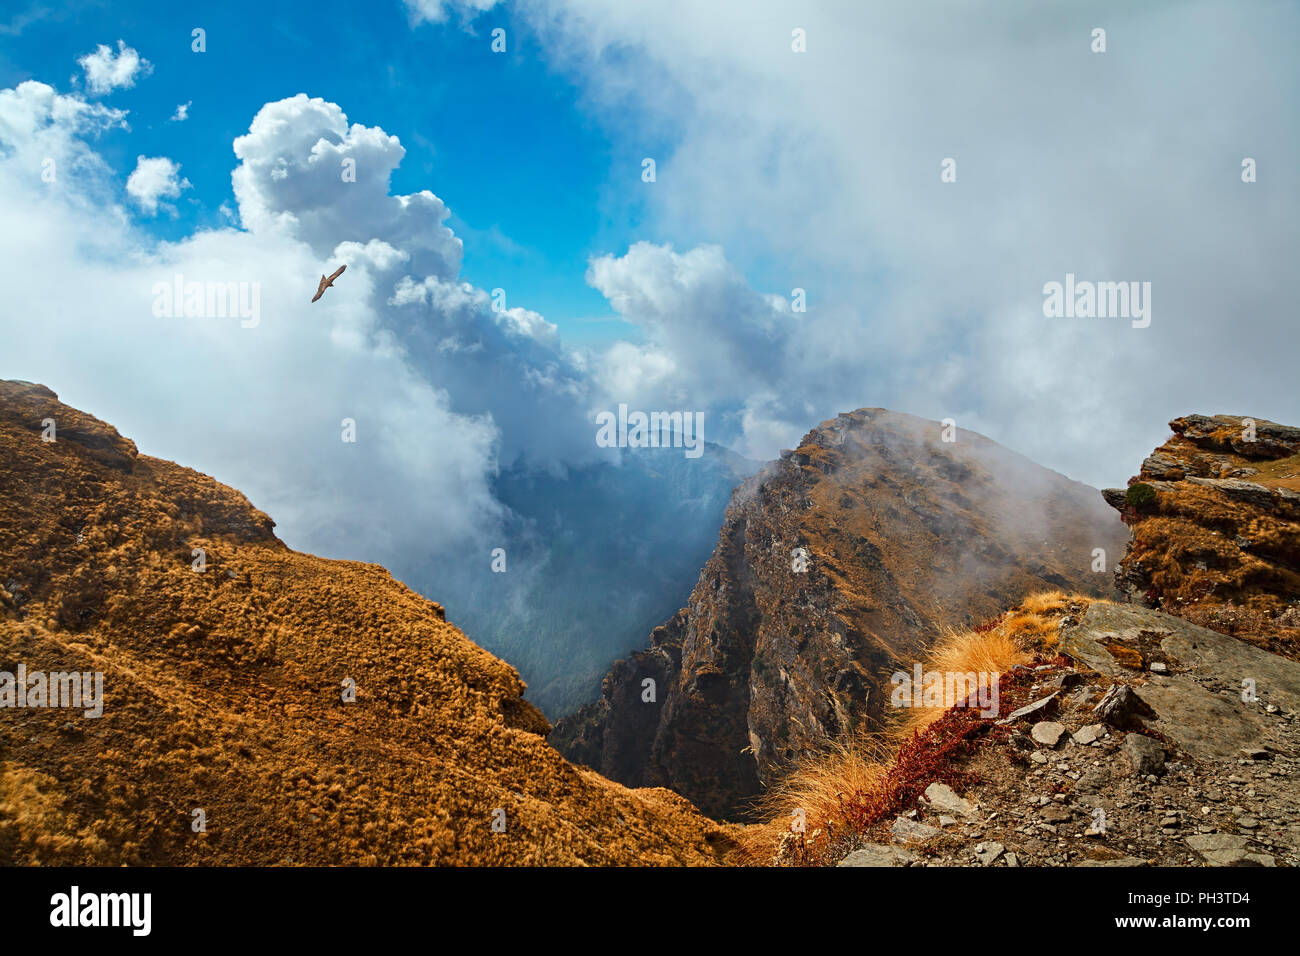 Vue aérienne de la montagne avec des nuages et un aigle volant. Vue depuis une pente de Chandrashila mont, de l'Himalaya, l'Inde Uttarakhand Banque D'Images